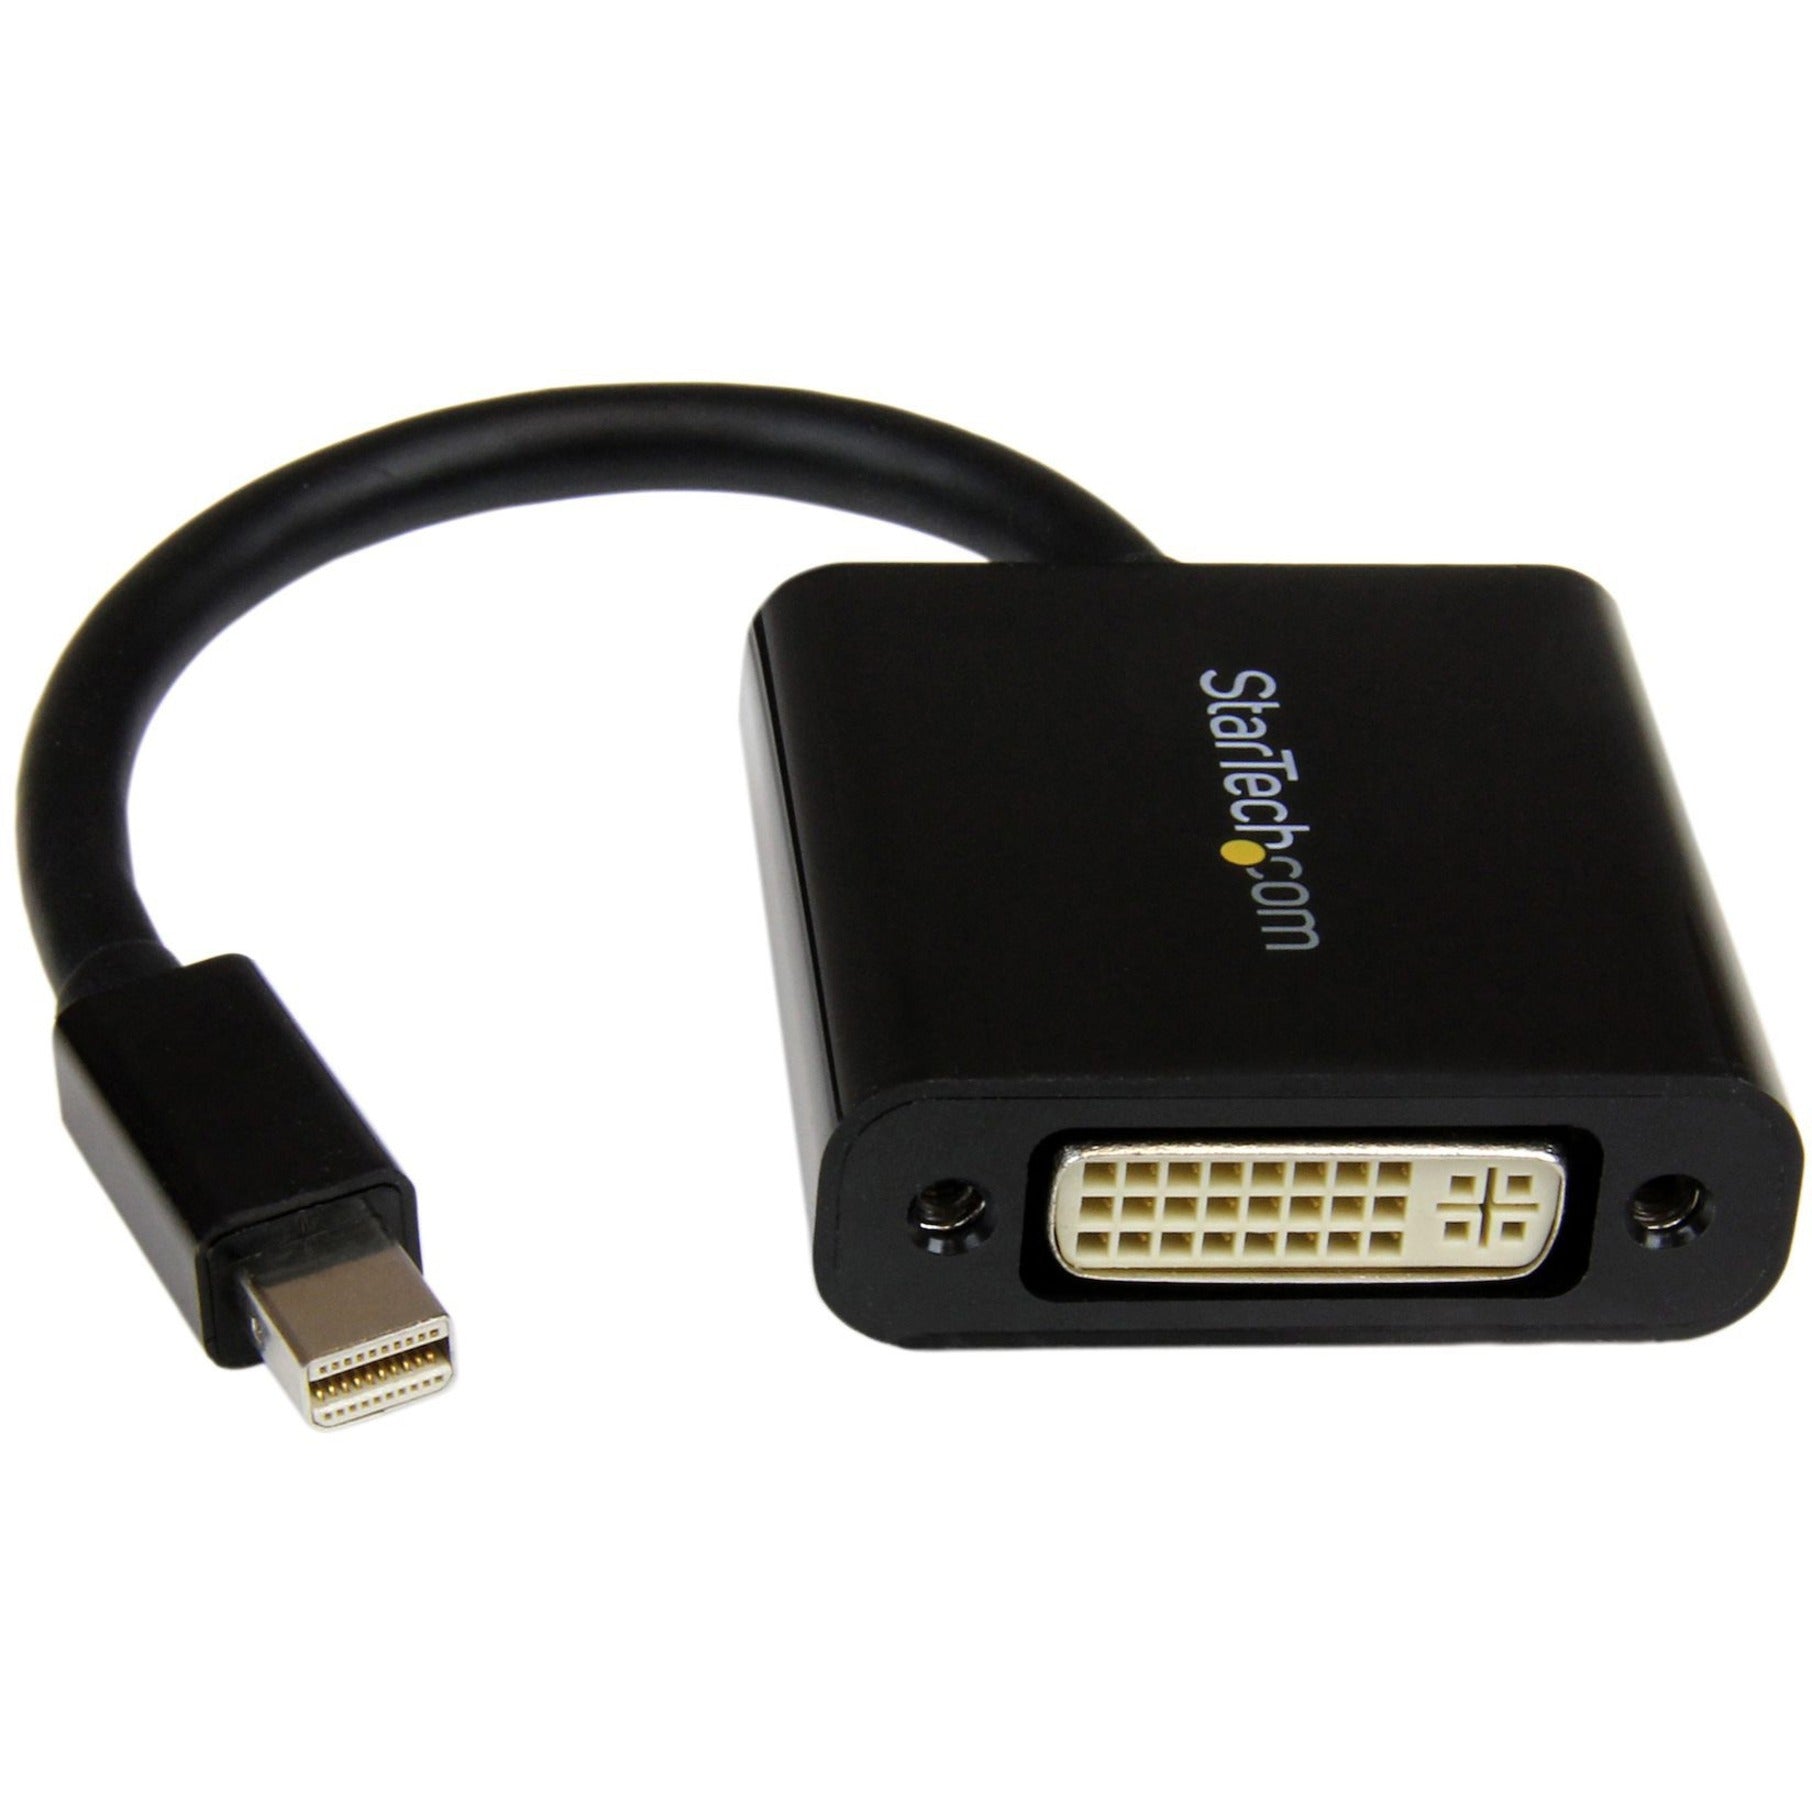 Startech.com Câble vidéo DisplayPort/DVI MDP2DVI3 passif longueur du câble 510" noir